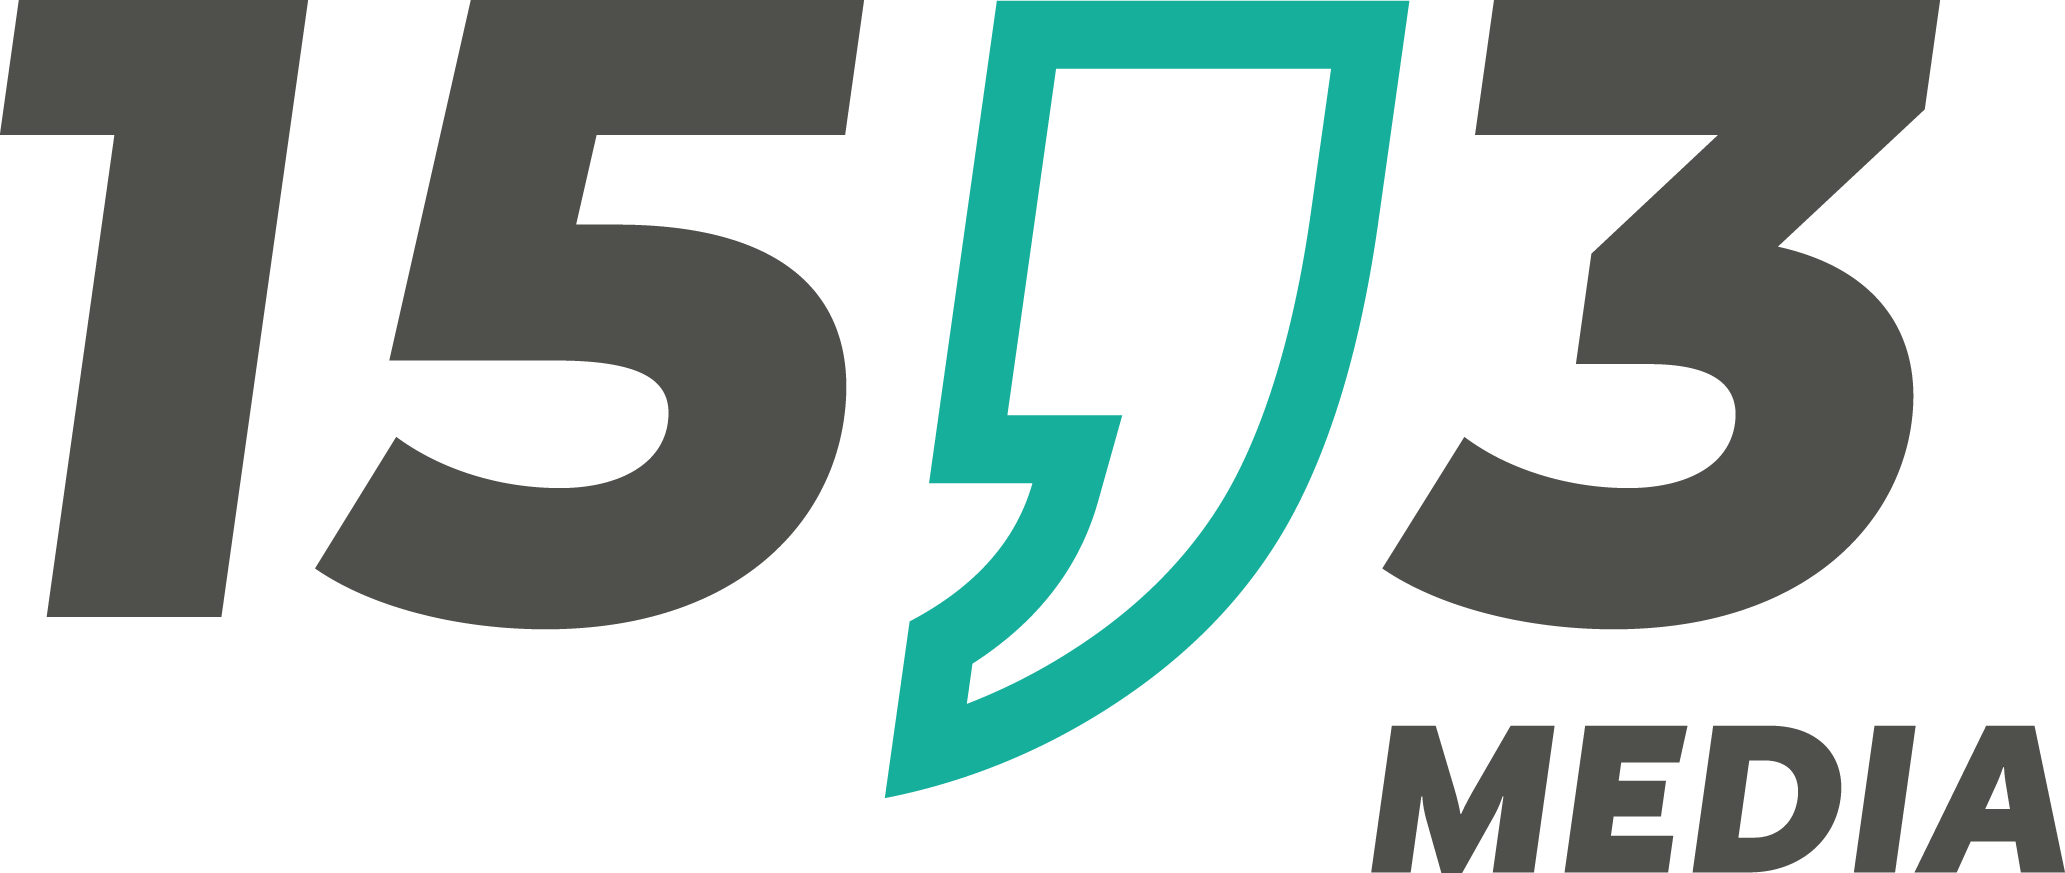 Logo 15komma3 media. Bestehend aus einer 15 in dunklem grau, einem großen Komma in Türkis und einer wieder dunkelgrauen drei.